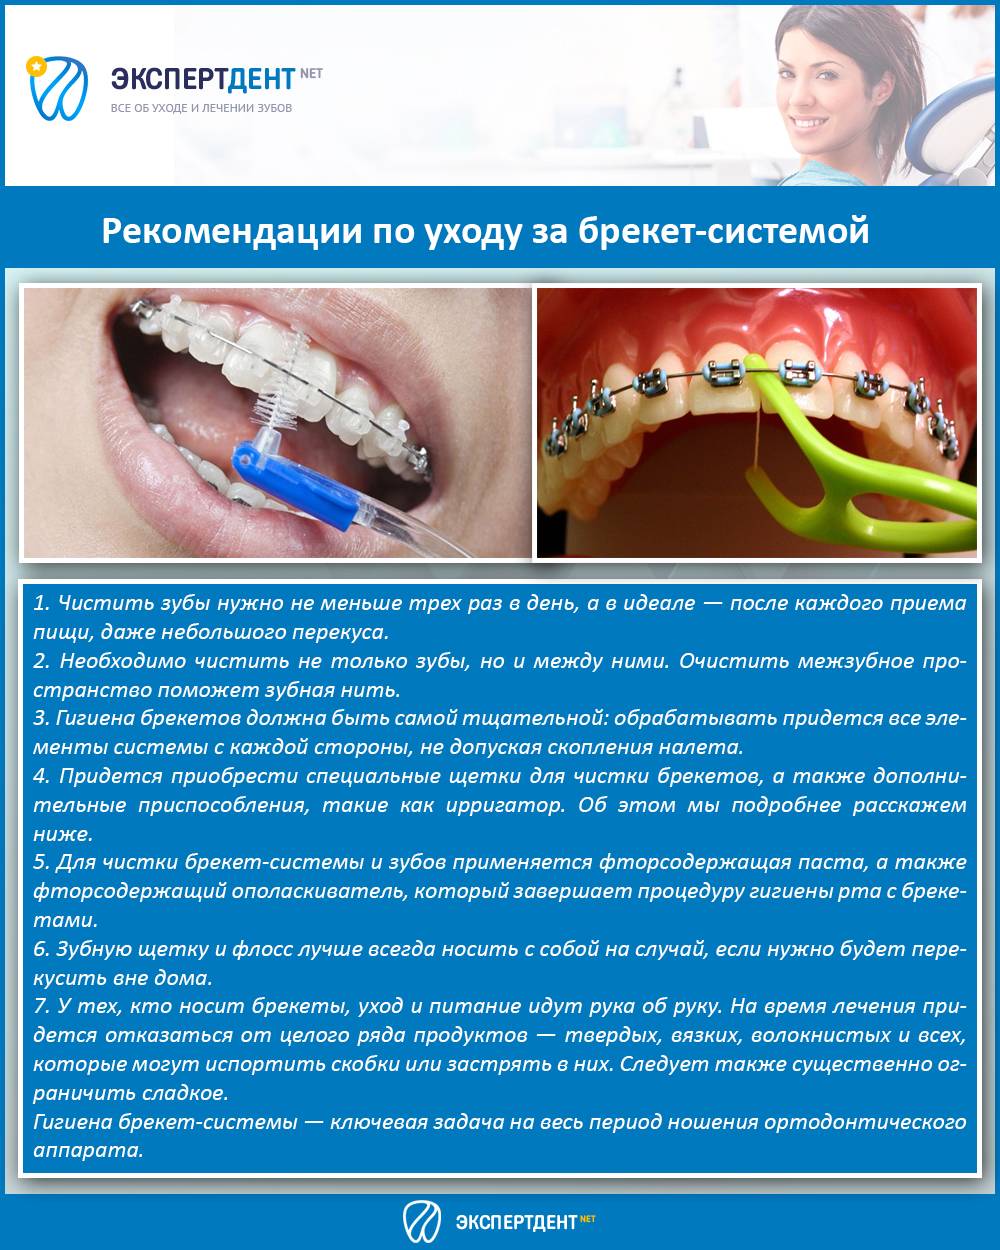 Что кушать после чистки зубов. Профессиональная гигиена полости рта. Рекомендации по уходу за брекет системой.